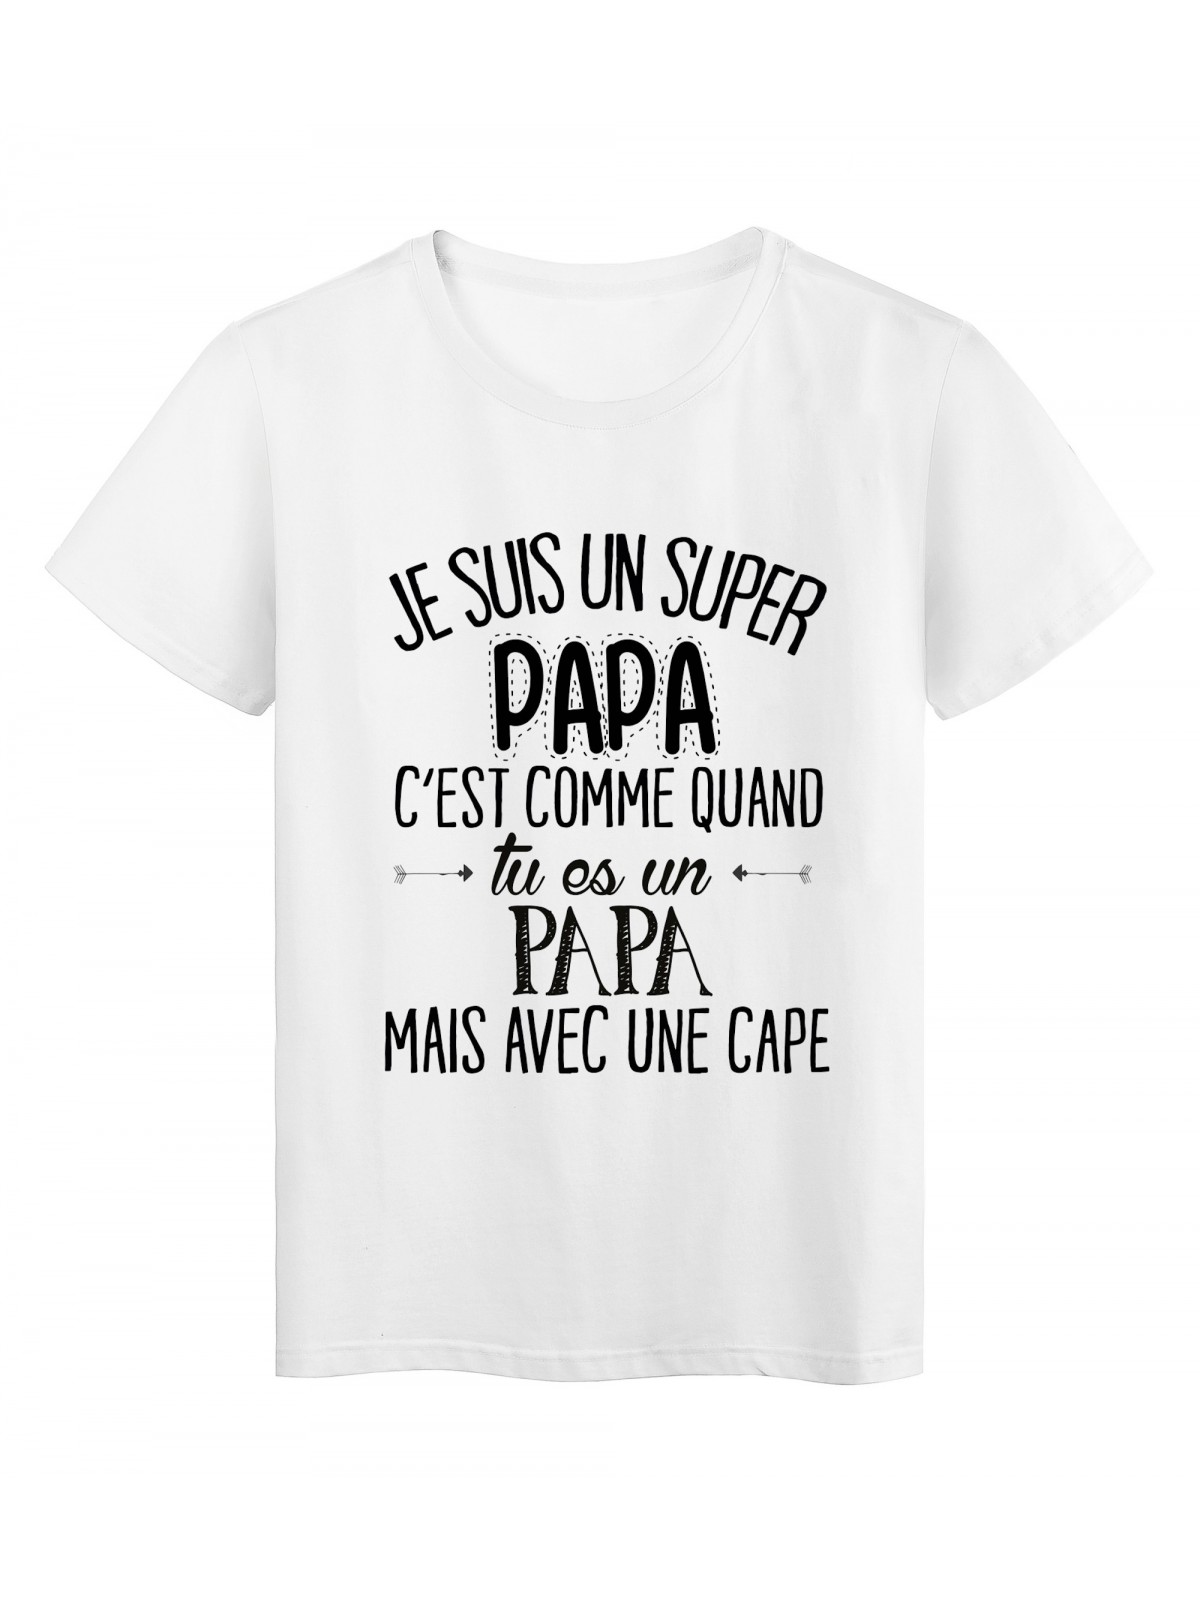 T-Shirt citation Je suis un super PAPA ref Tee shirt 2057